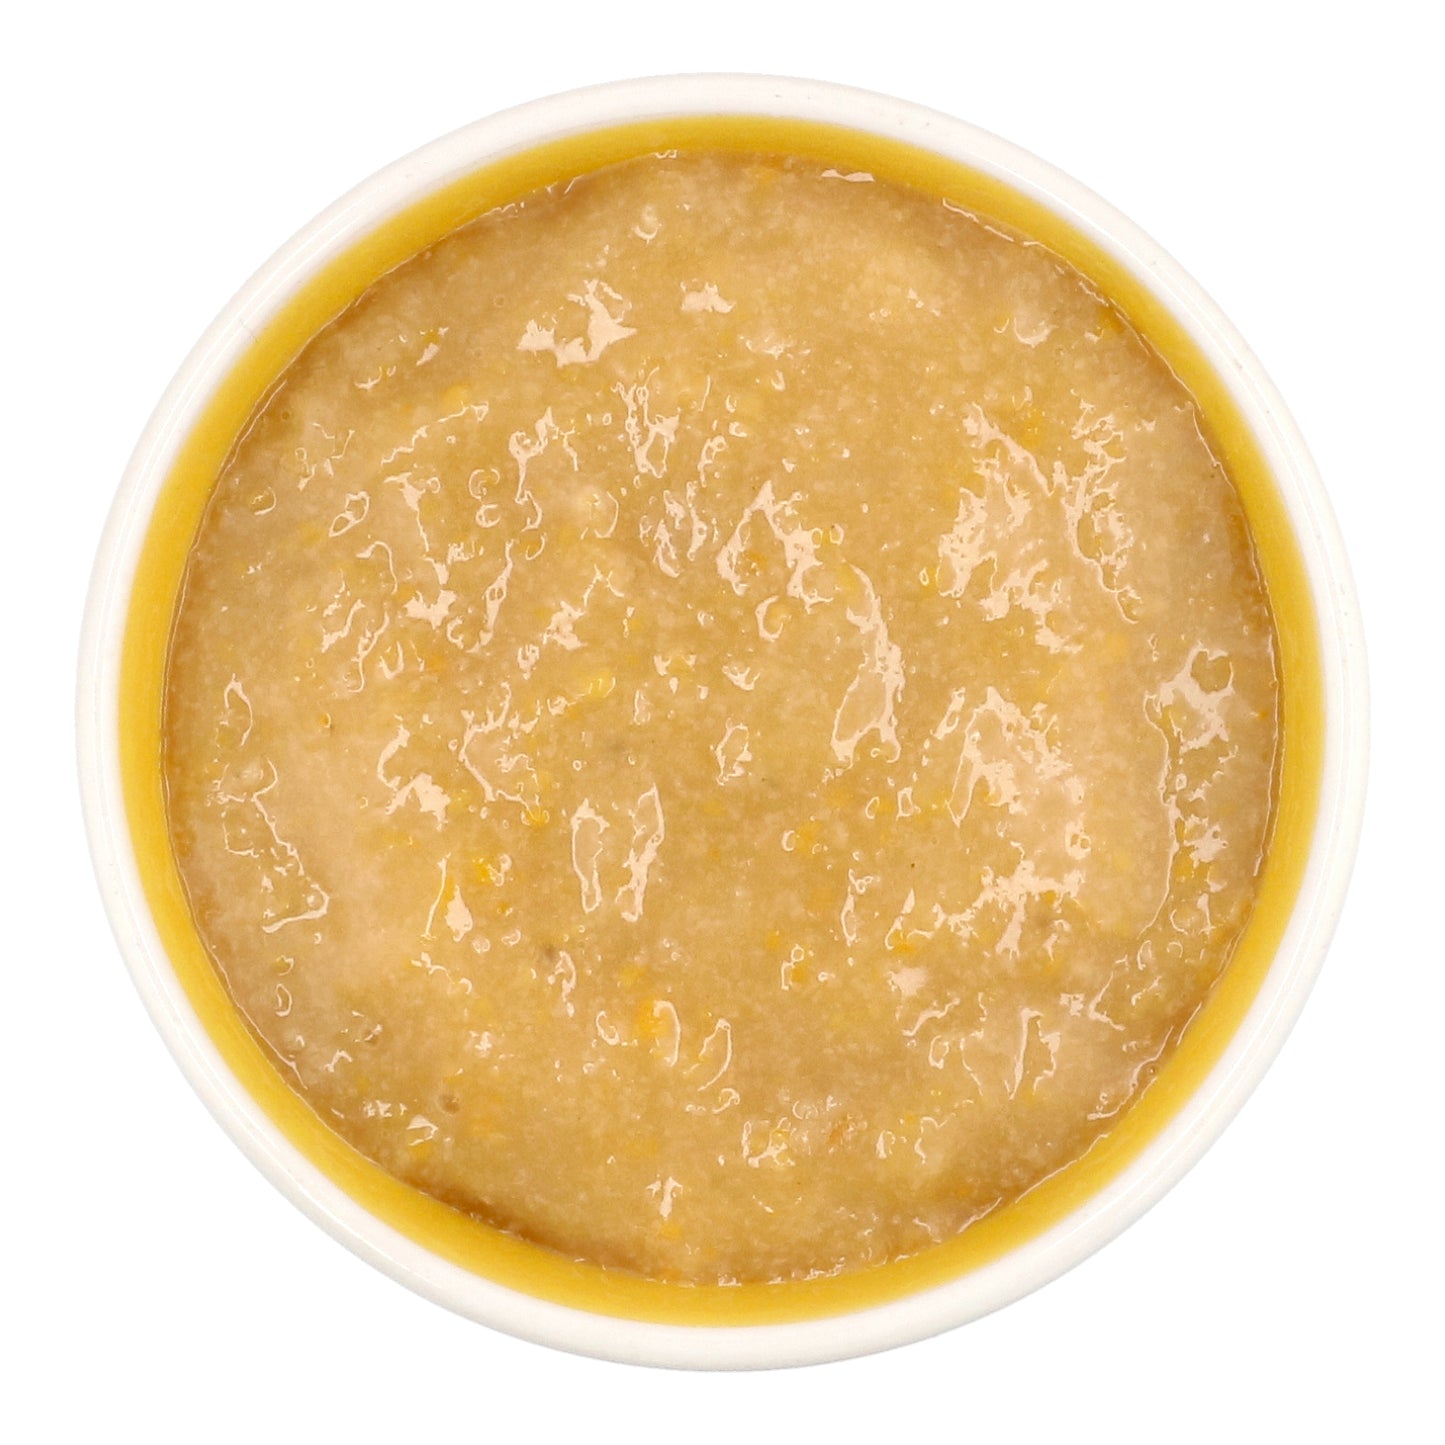 Eusik - 8-Pk Baby Rice Porridge (Sweet Pumpkin & Jujube) 145g, 6mths+